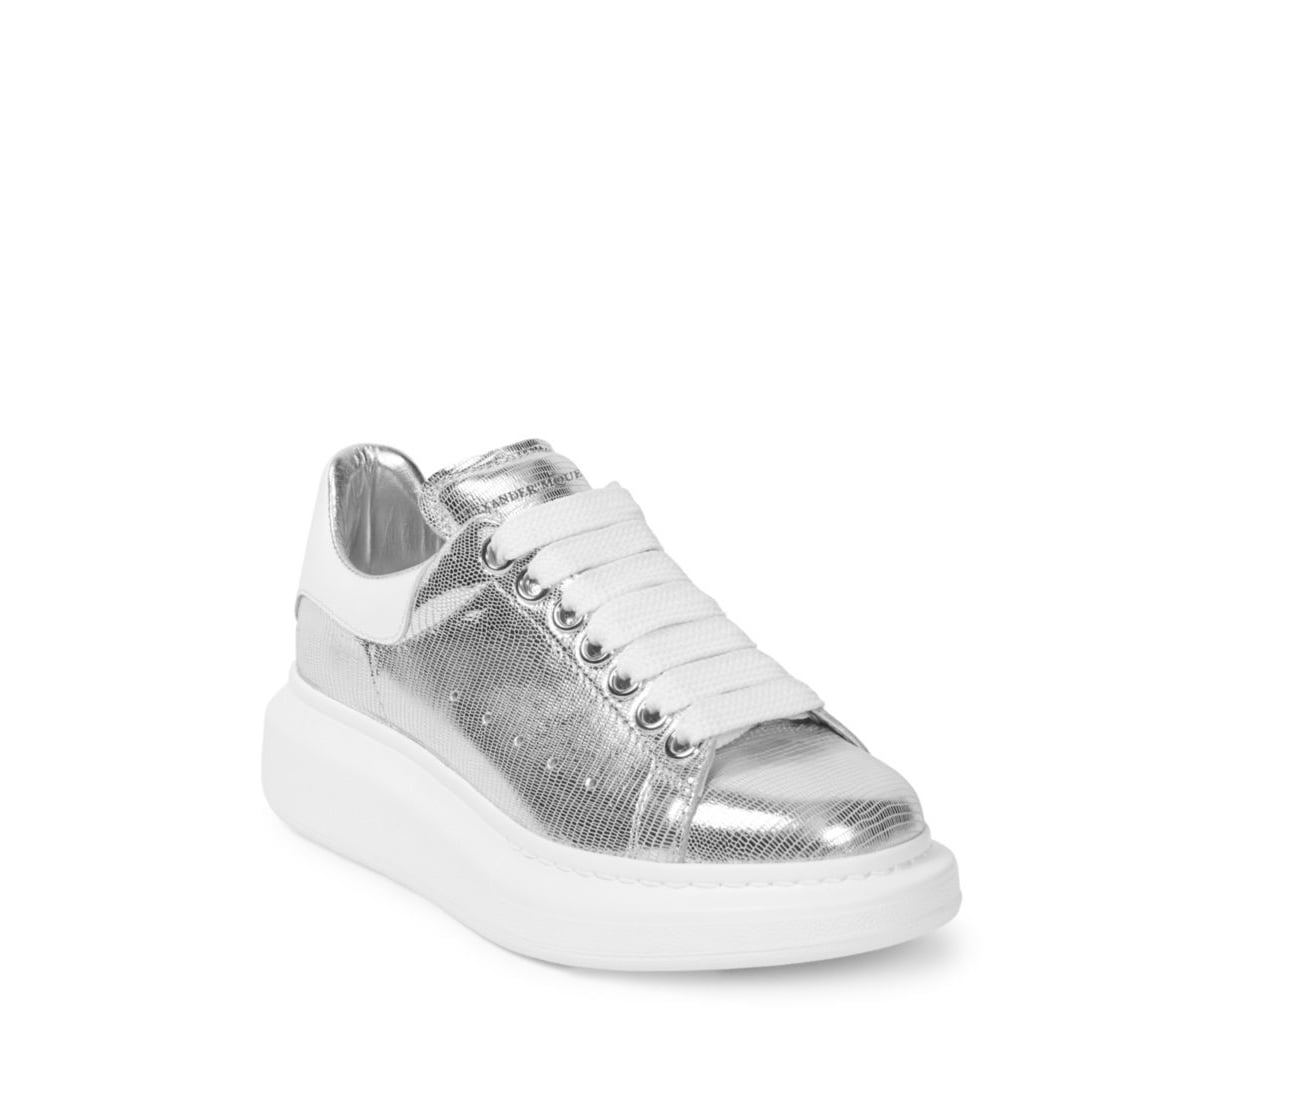 Alexander McQueen Metallic Leather Sneakers | Gigi Hadid's Wearing 